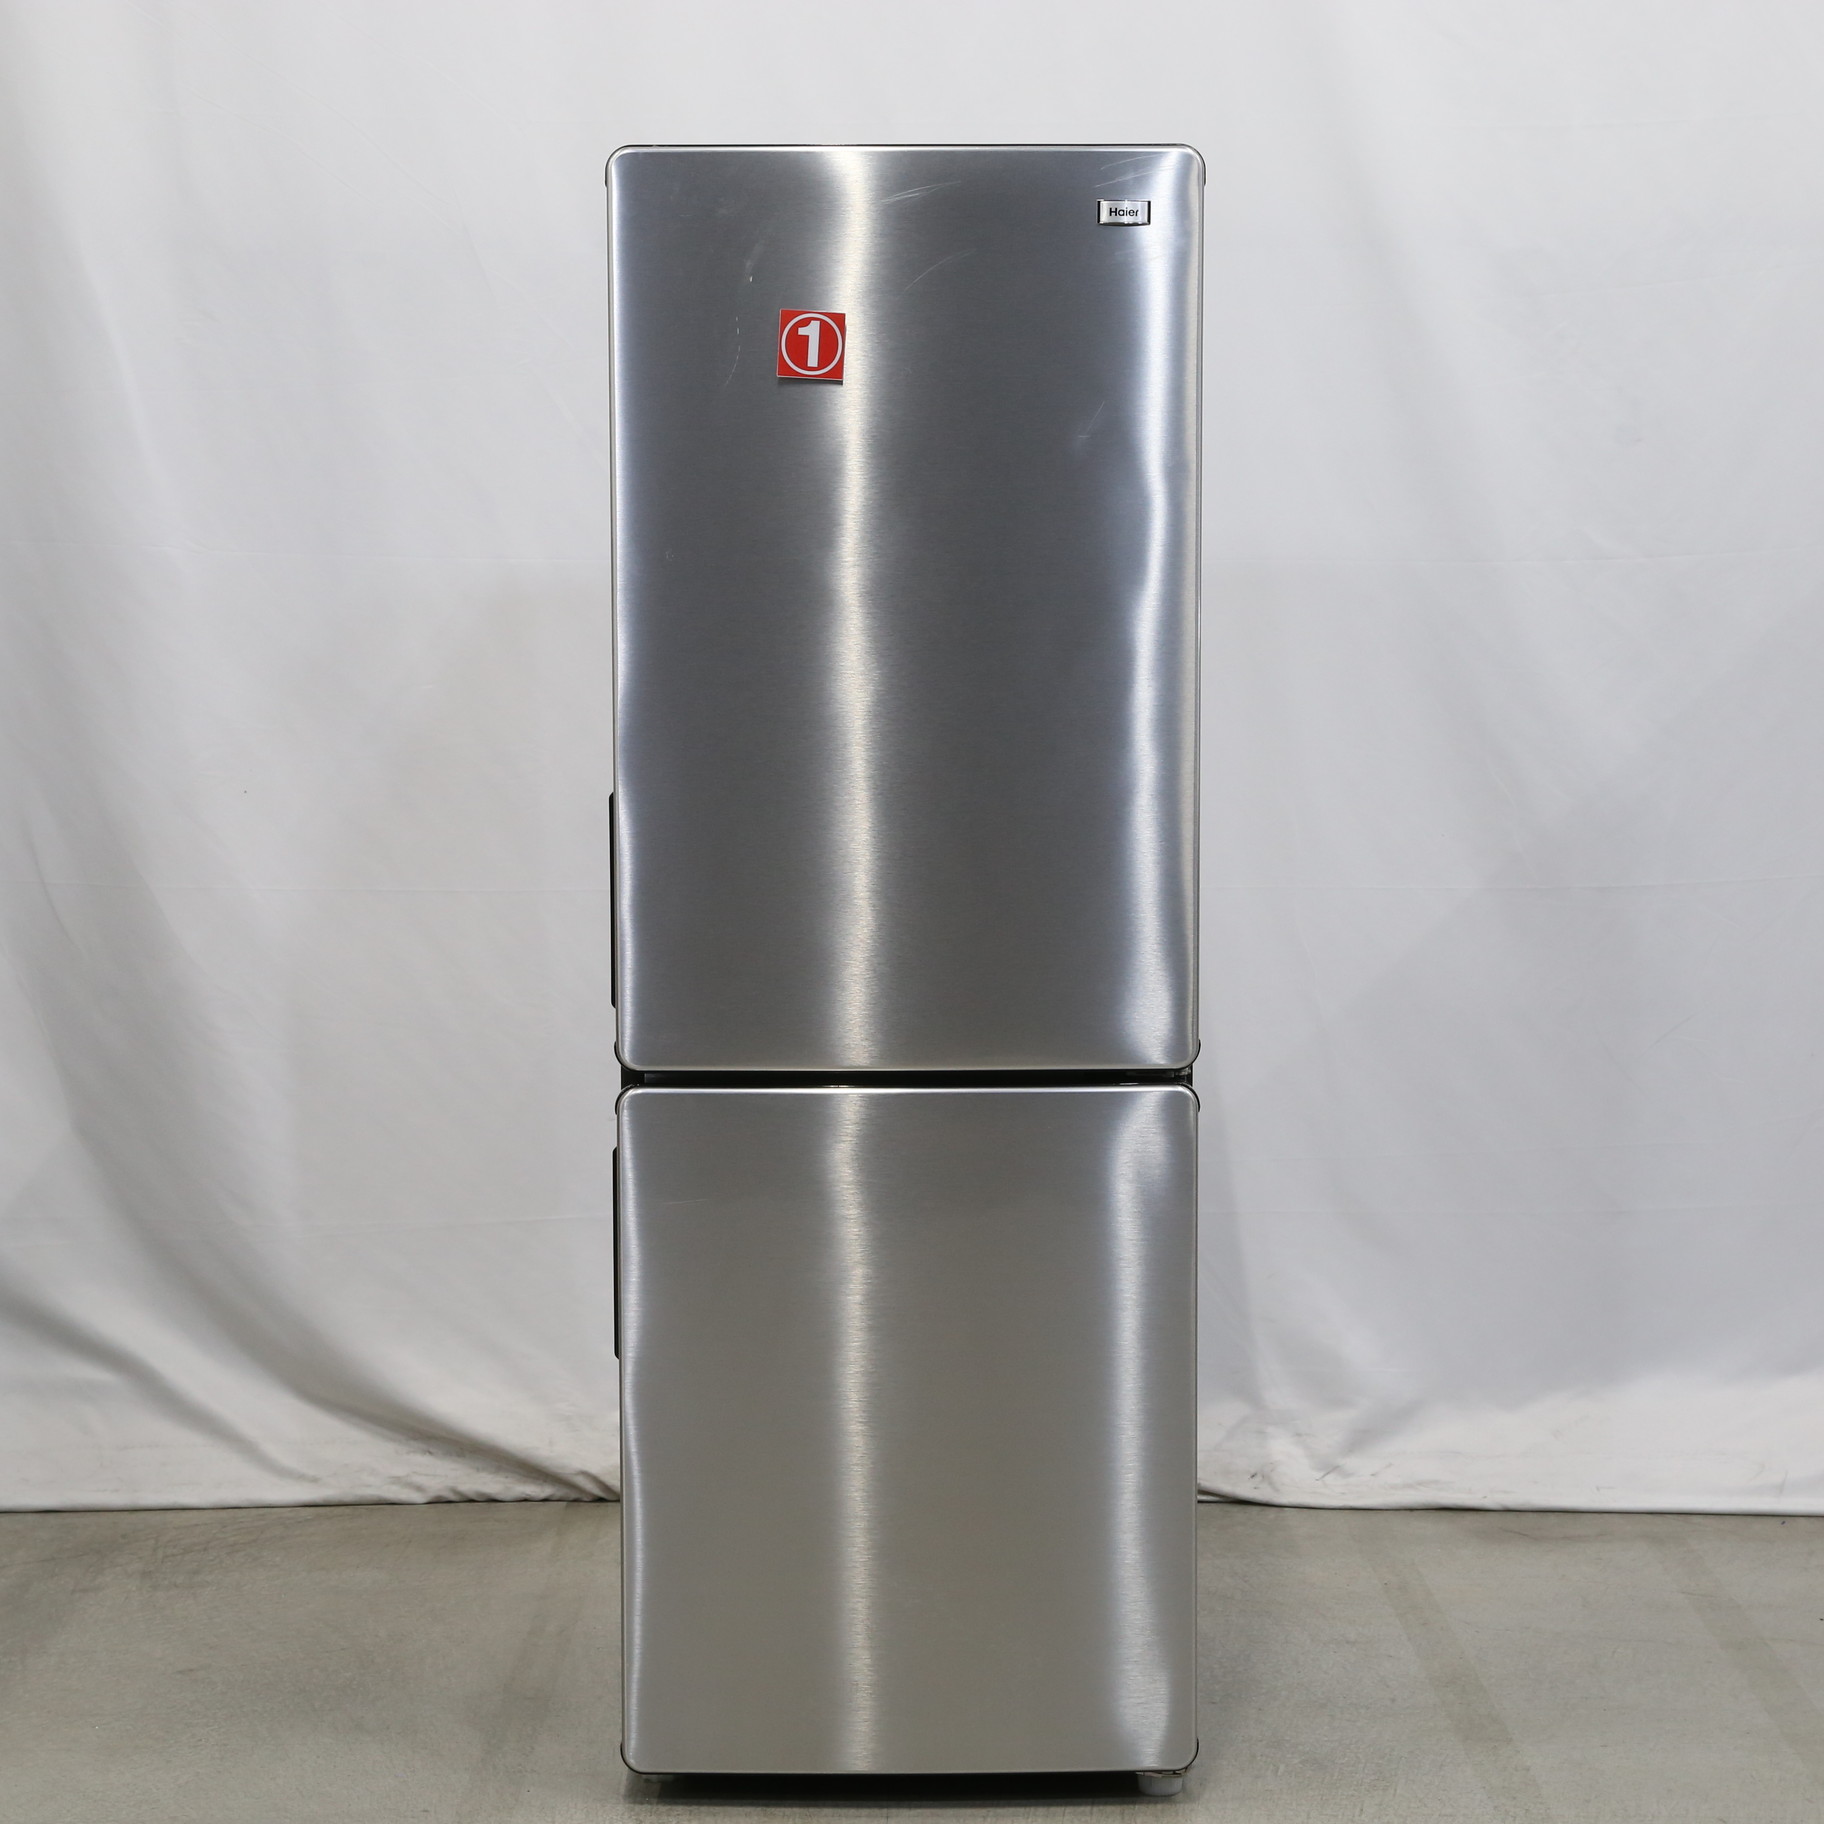 未使用 ハイアール 173L 2ドア冷蔵庫 JR-XP2NF173F（XK) - 冷蔵庫